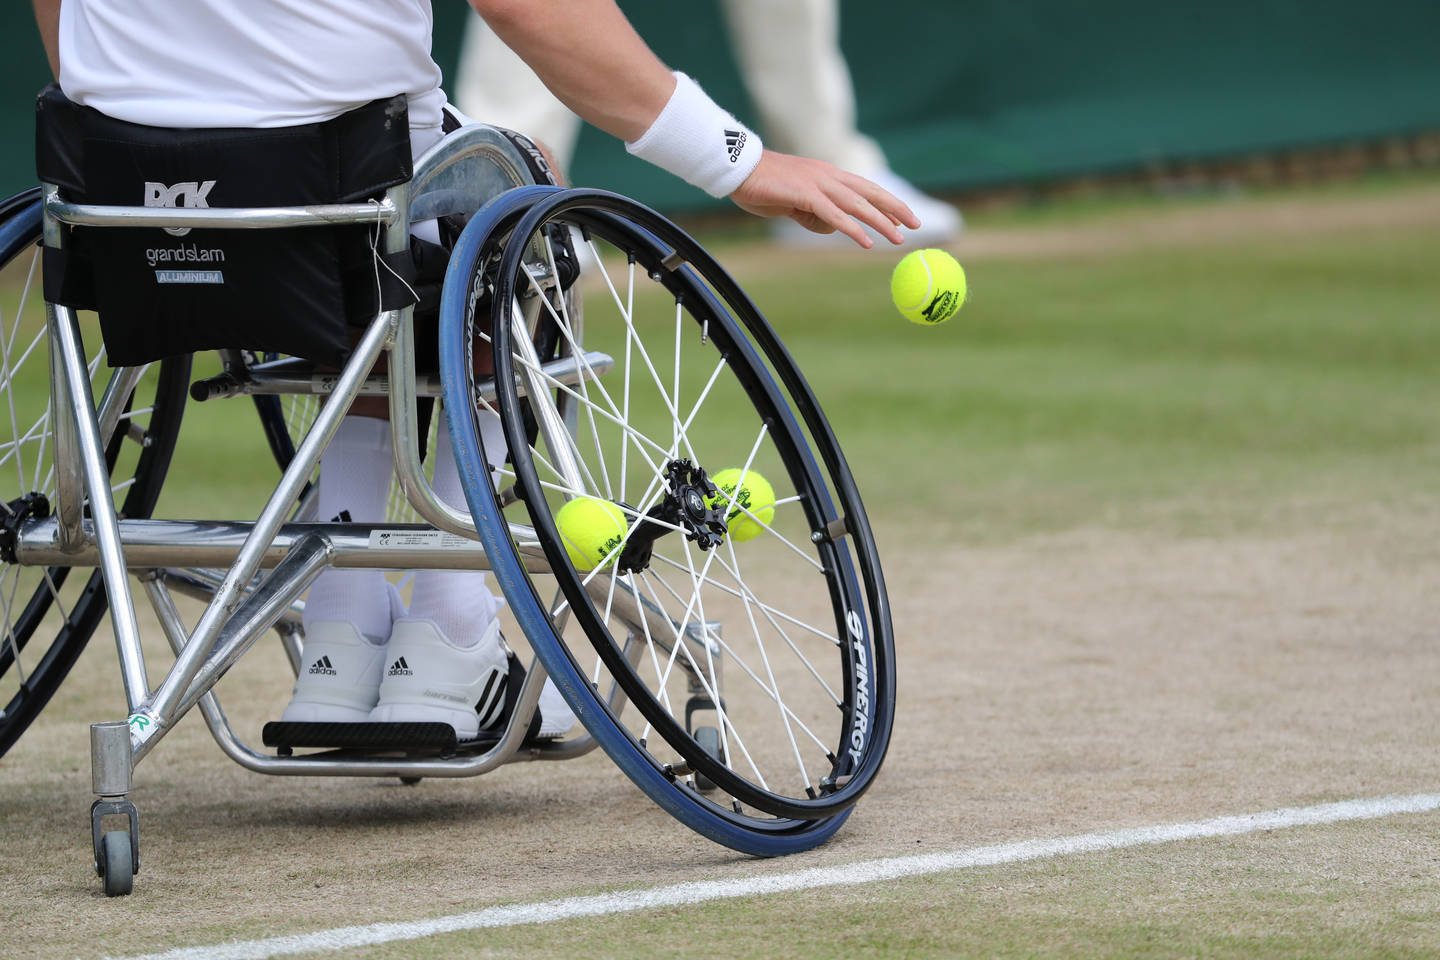 Wheelchair tennis on grass court